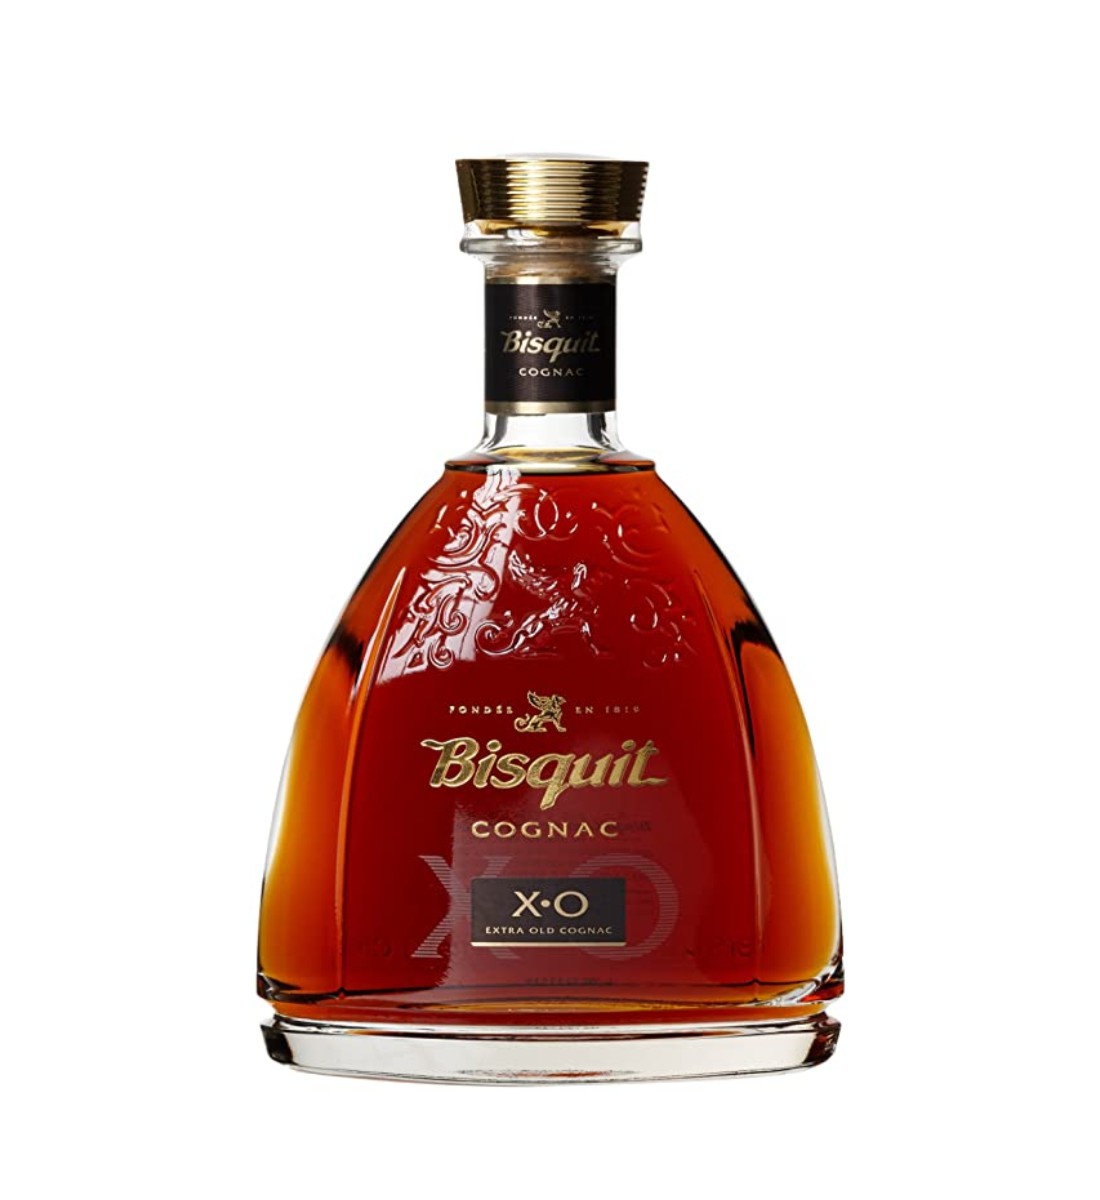 Cognac Bisquit Dubouche XO 0.7L